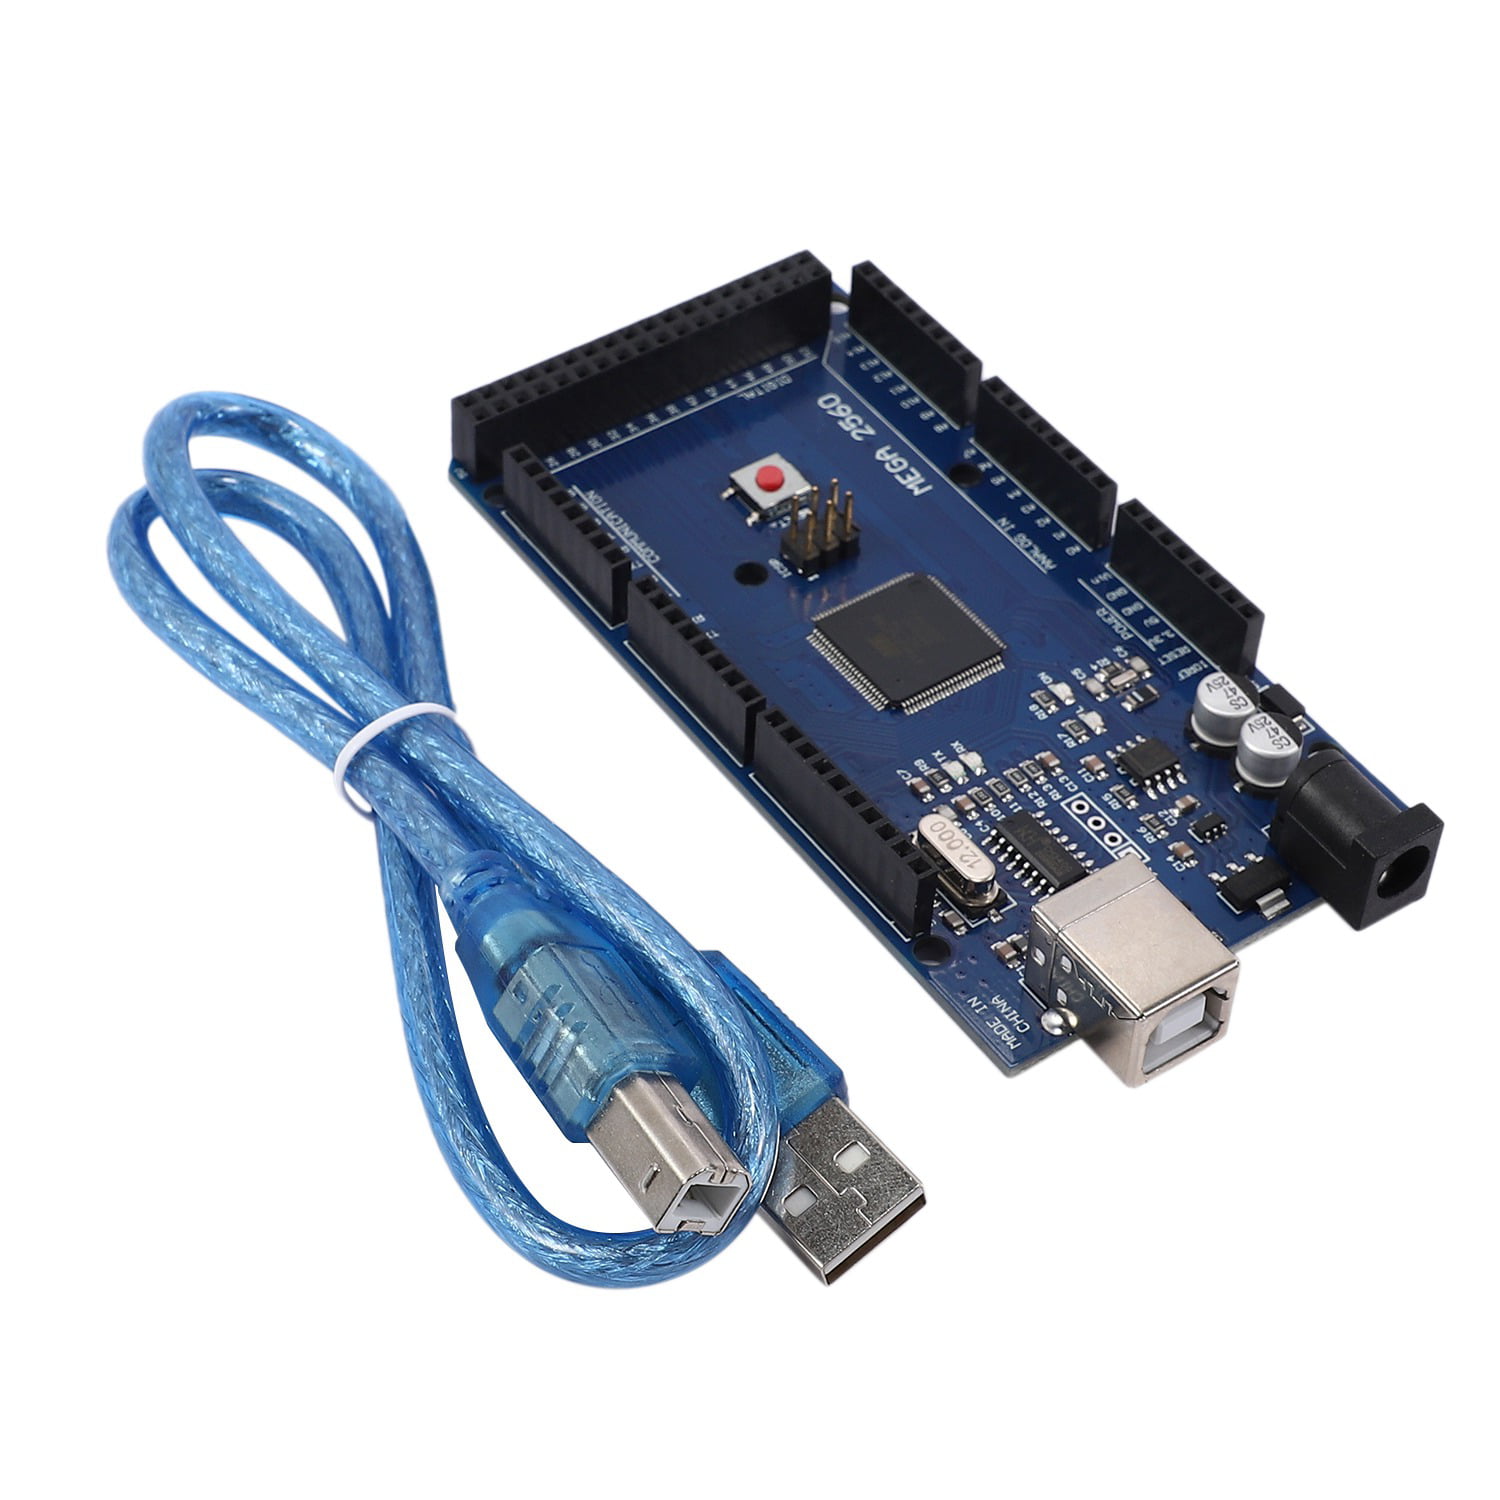 MEGA 2560 R3 ATMEGA16U2 ATMEGA2560-16AU Board & USB A Male to Type B Plug Cable